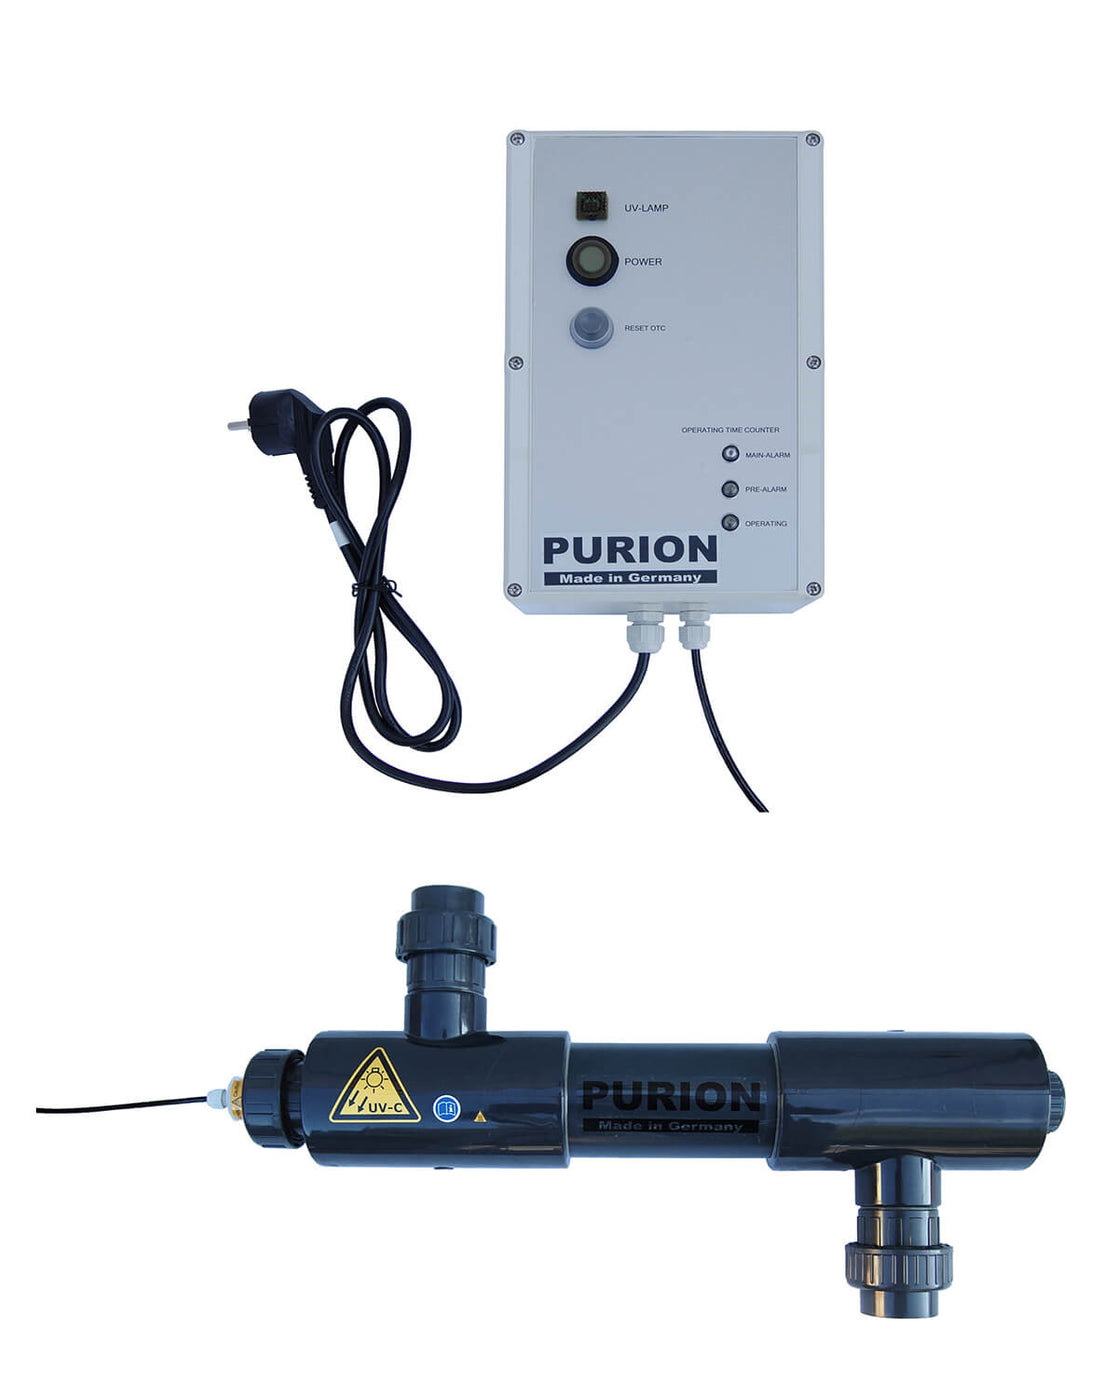 Die Purion GmbH ist mit ihrem Produkt, dem PURION 2001 PVC-U OTC Plus, auf UV-C-Desinfektions- und Reinigungsdienste für Salzwasserpools spezialisiert.